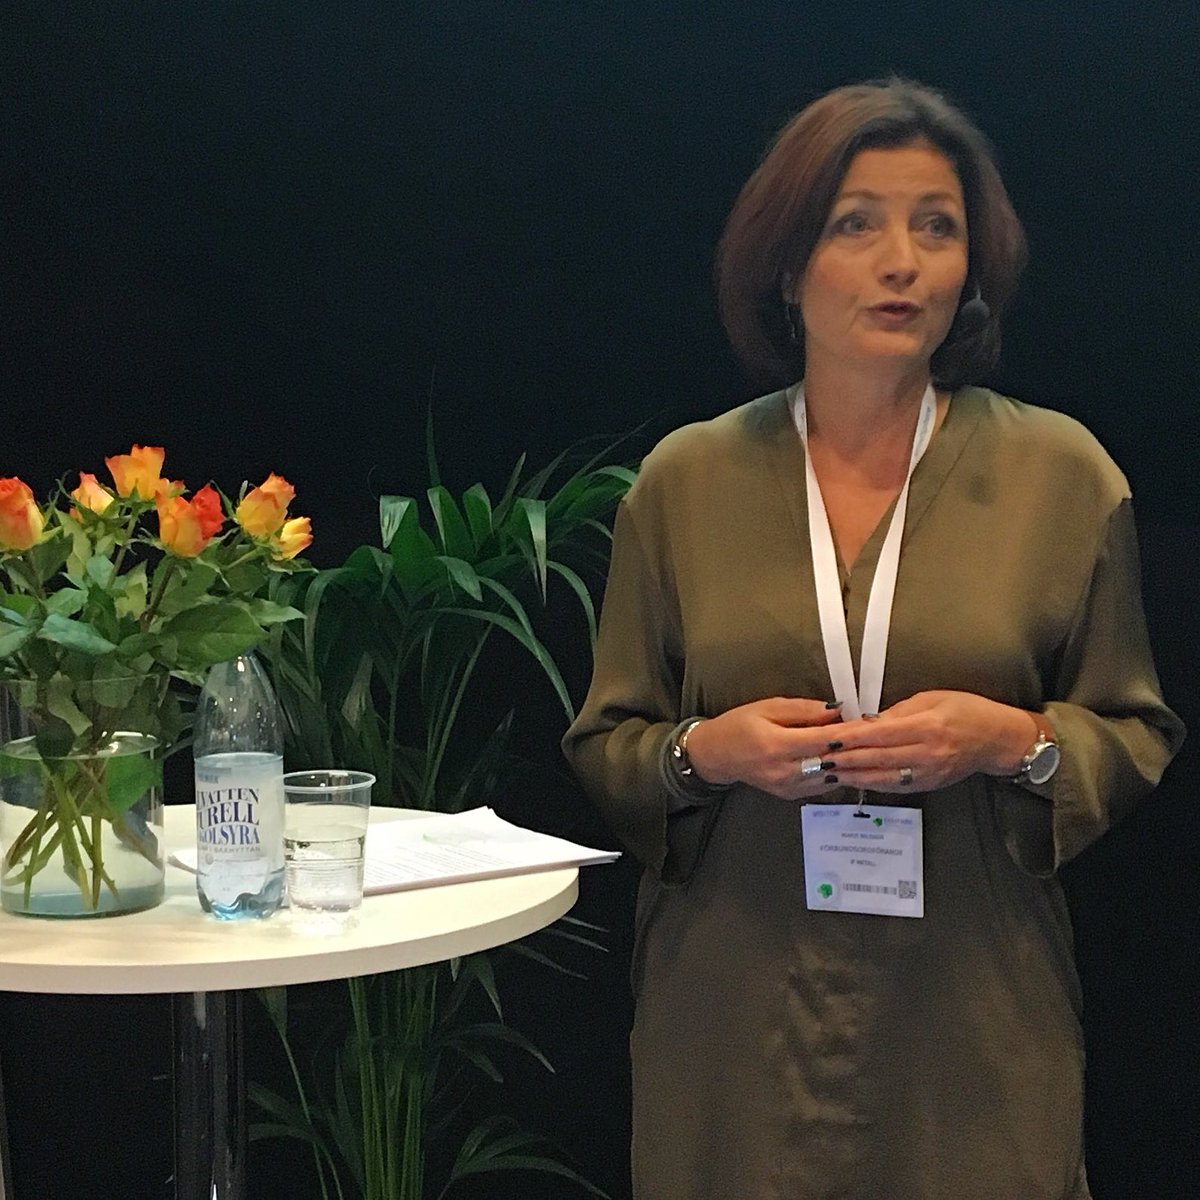 ”Vi kan utveckla svensk industri till en framgång för både människor, miljö och affärer.” @marienilsson64 talar på #industrimassorna